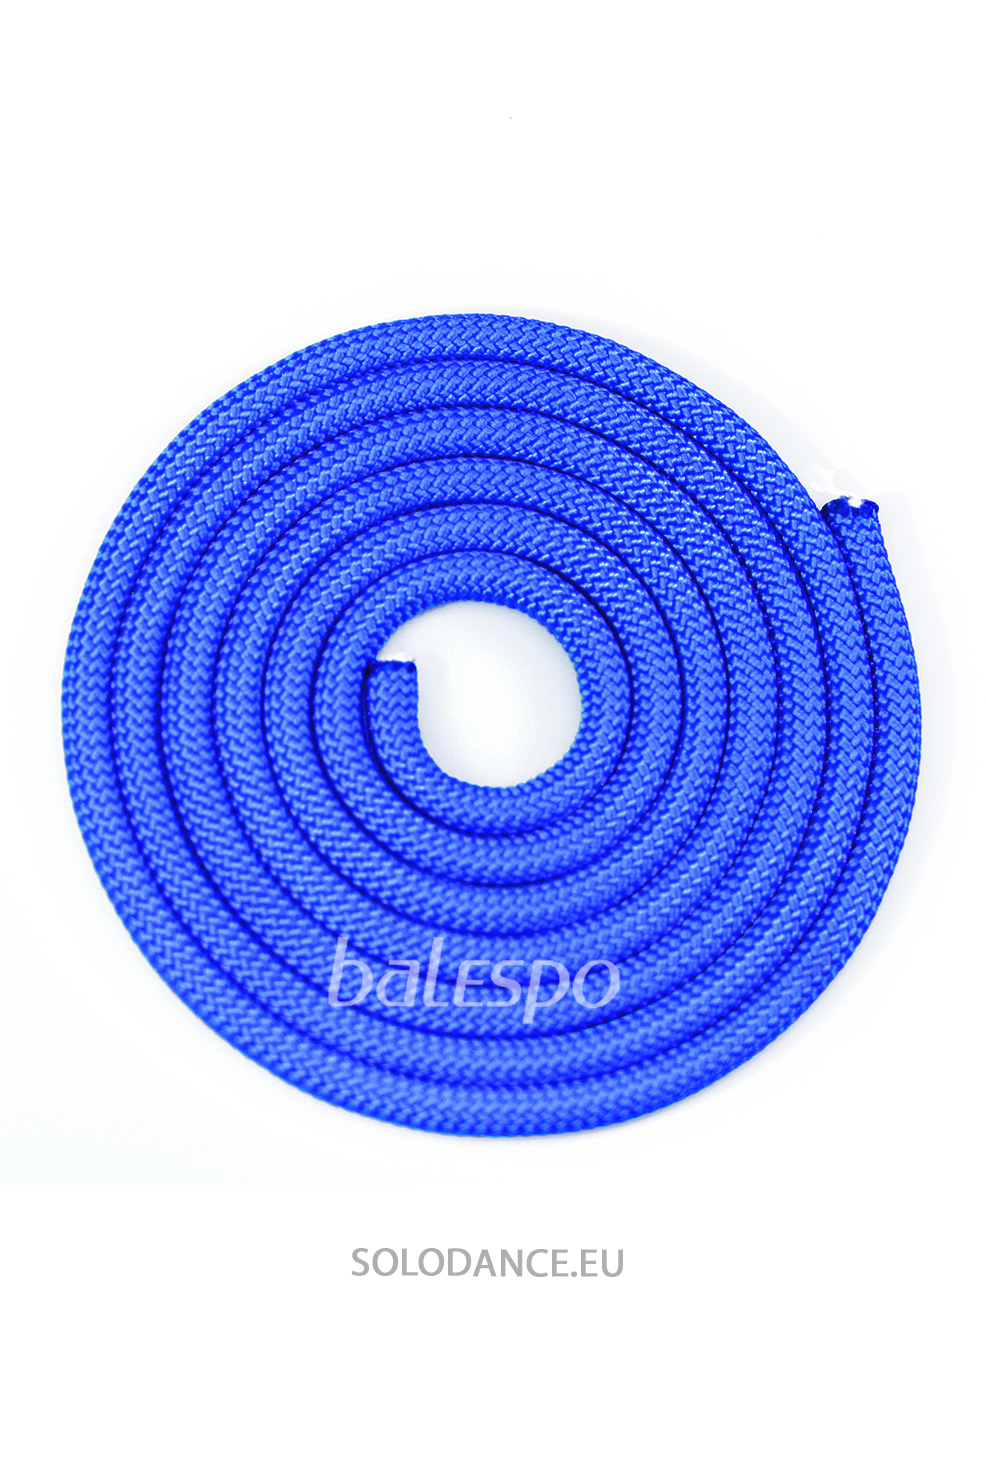 Gymnastické švihadlo BALESPO modré 3 m